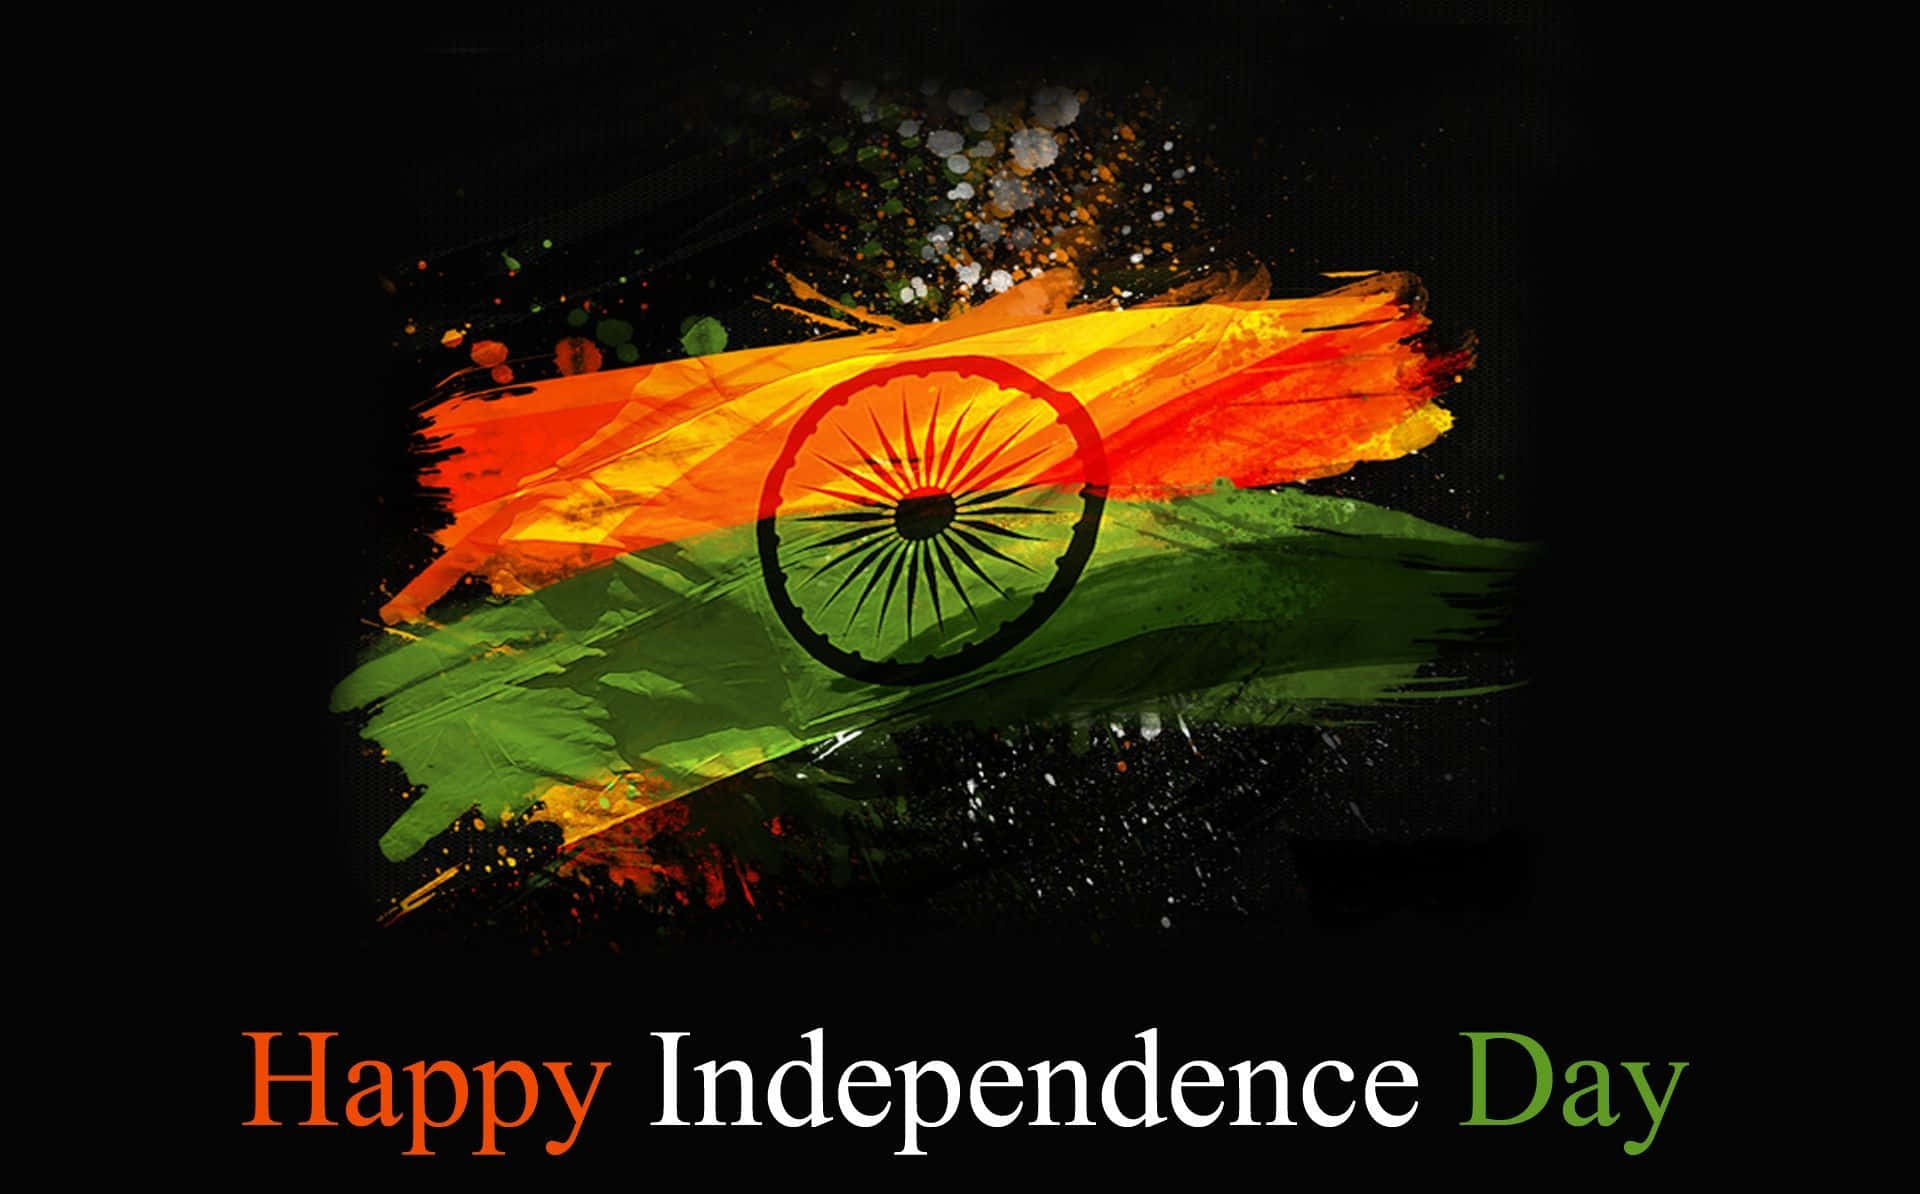 Feiertden Unabhängigkeitstag!